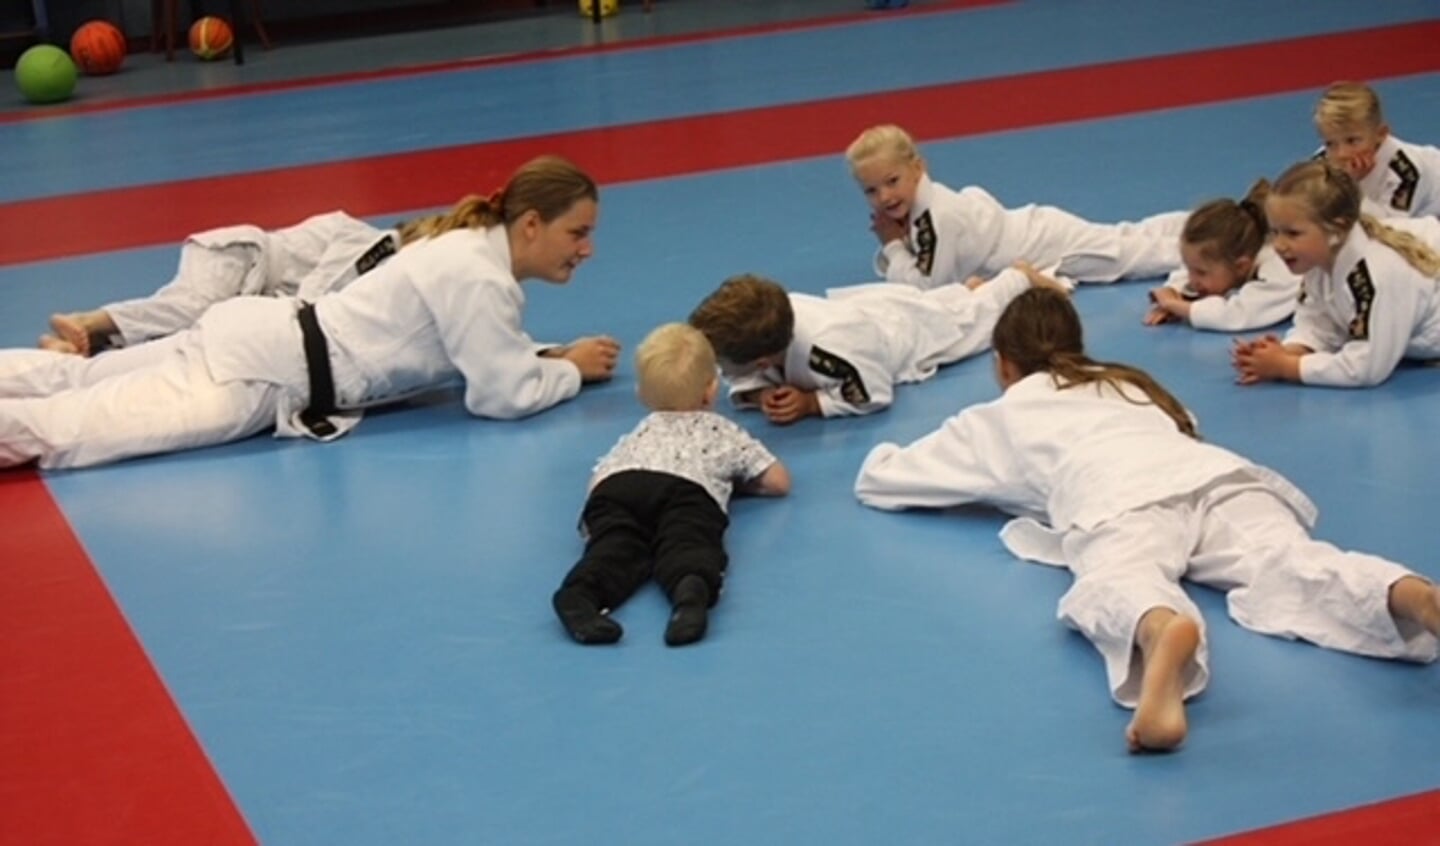 Tuimeljudo is de voorloper van judo en is voor kinderen van 2,5 tot 4 jaar. 